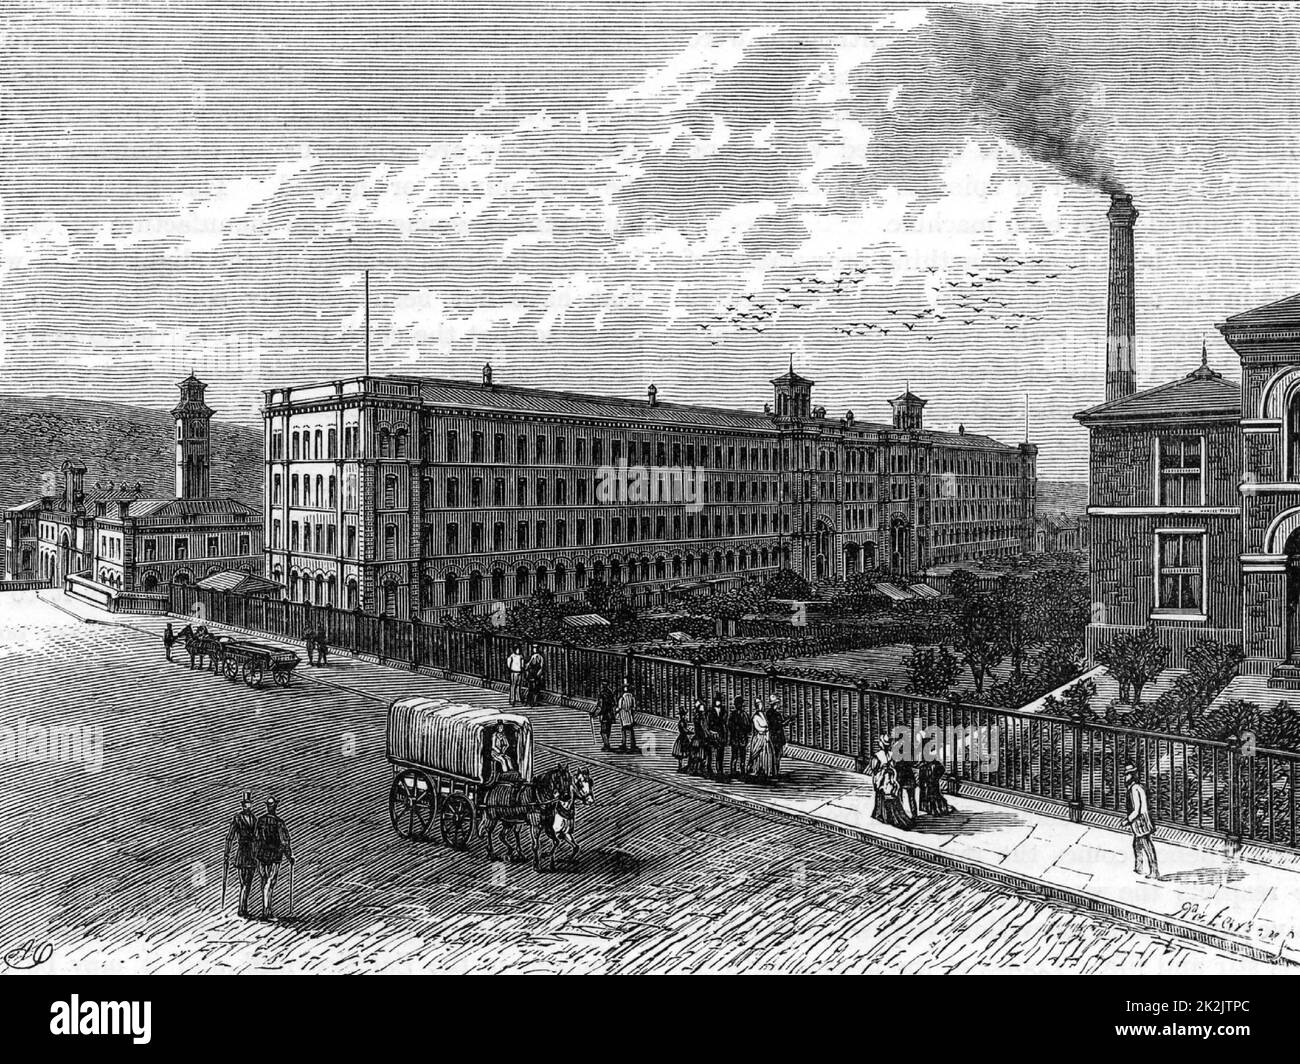 Saltaire, die Textilfabrik und Stadt in der Nähe von Bradford, Yorkshire, wurde 1851 vom Industriellen Titus Salt (1803-1876) gegründet. Salt hatte Regierungsverträge zur Herstellung von Stoffen für Militäruniformen. Aus „Great Industries of Great Britain“ (London, c1880). Gravur. Stockfoto